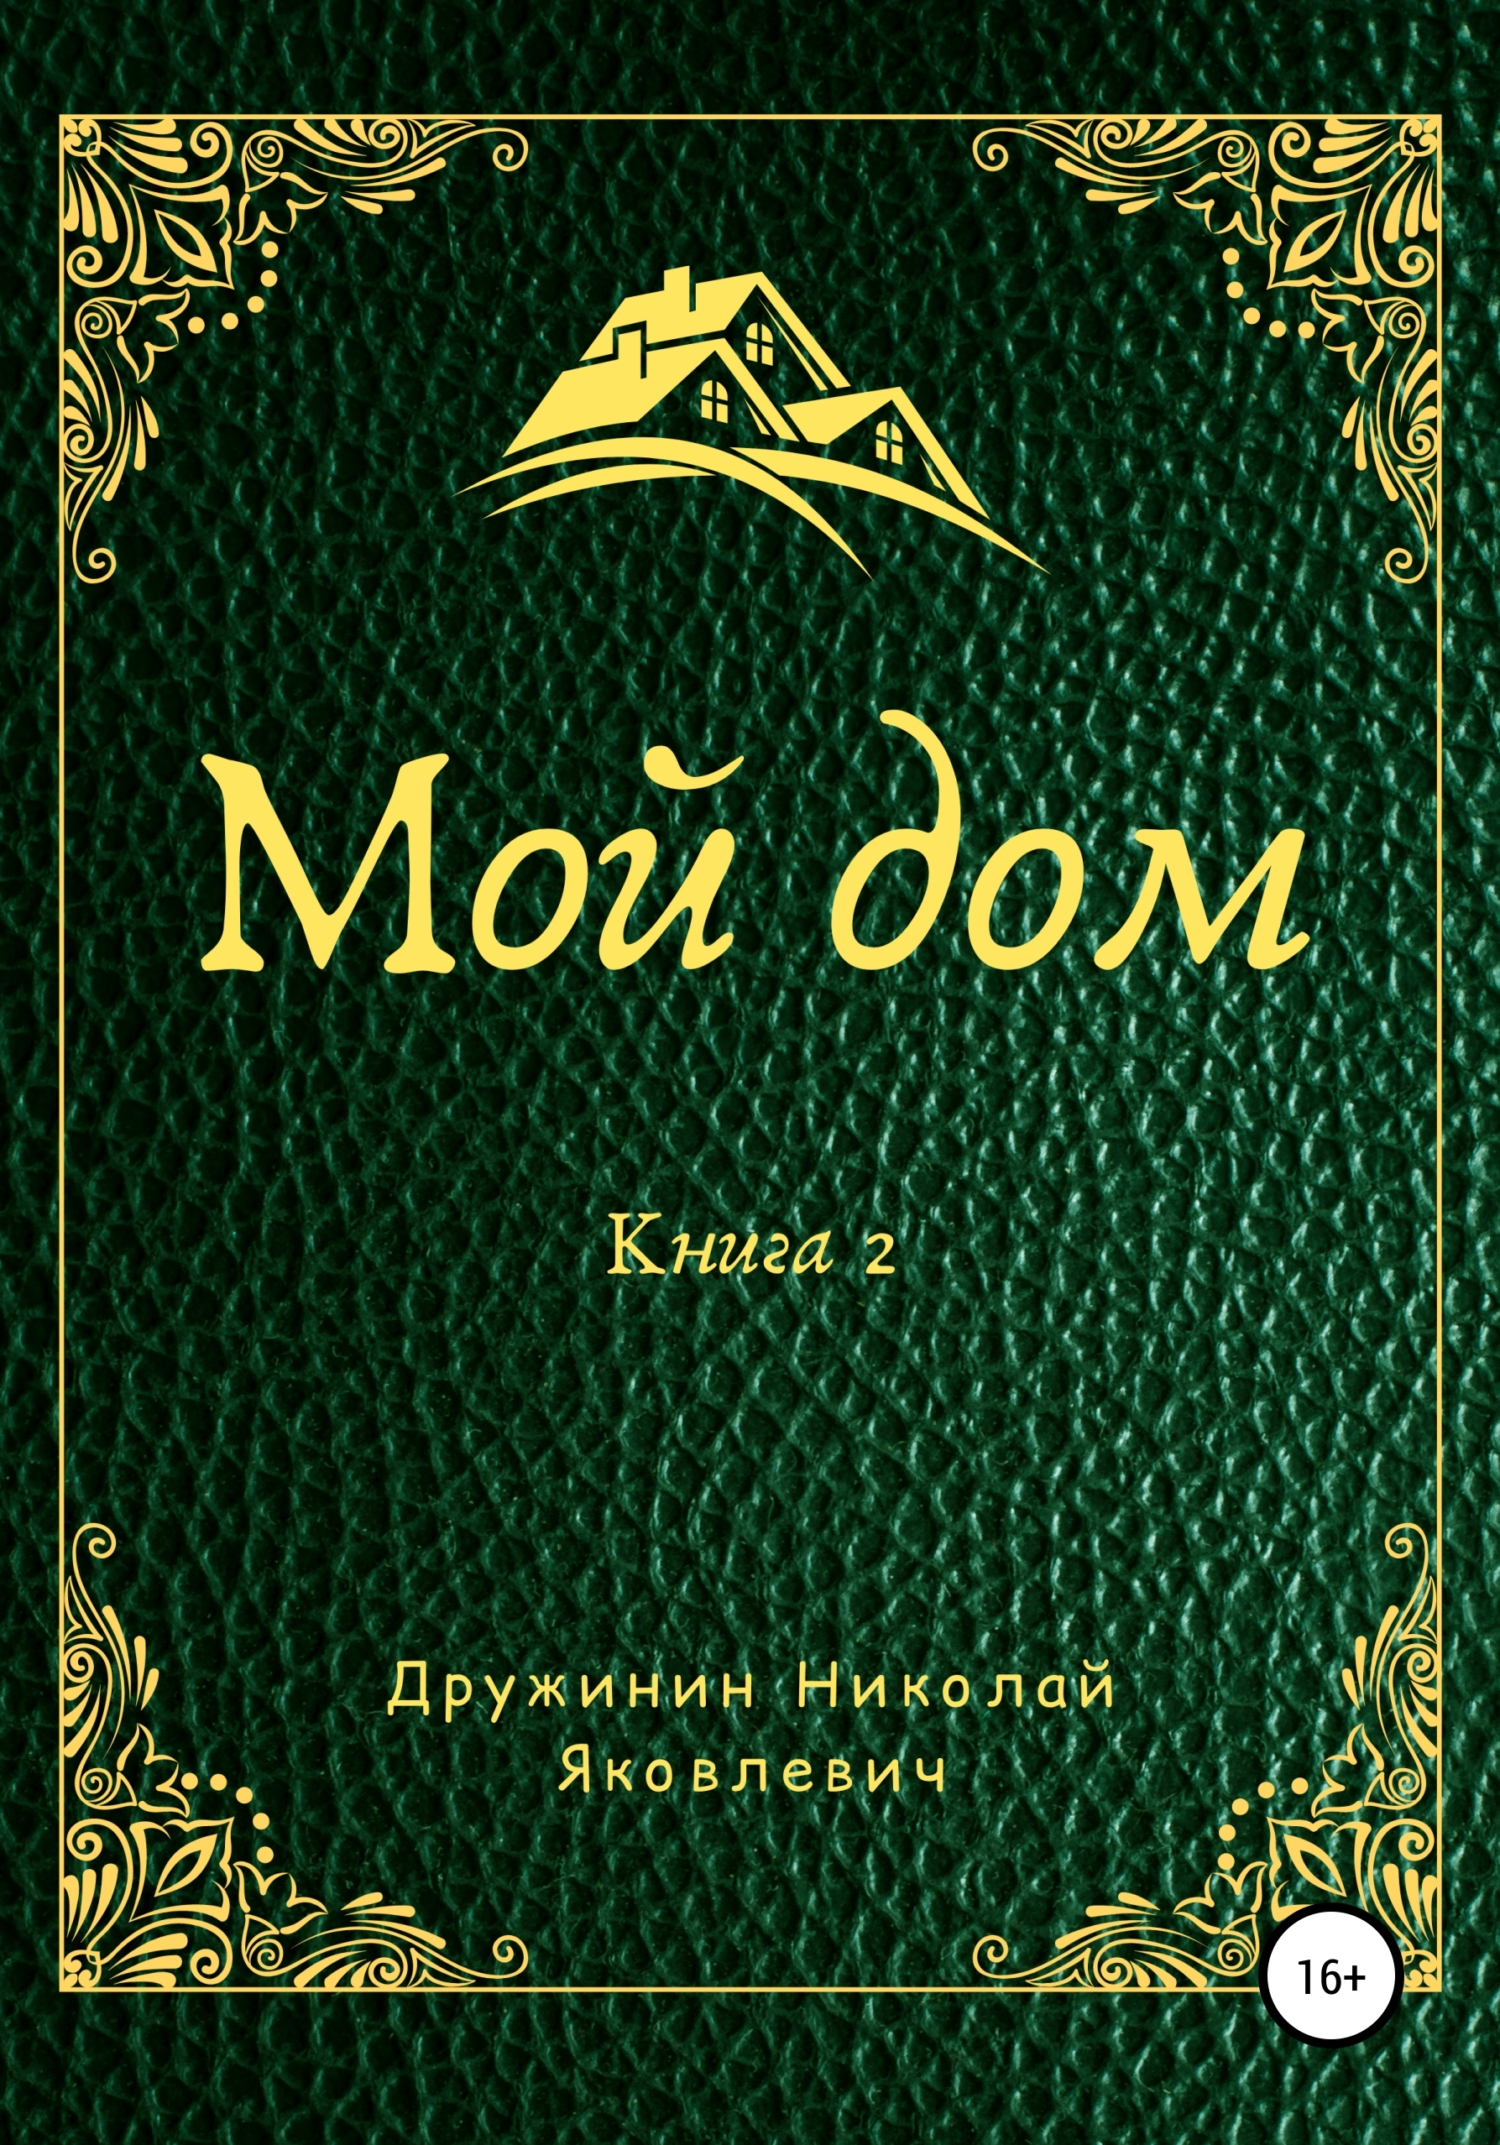 Мой дом (Давид Кали) купить книгу в Киеве и Украине. ISBN 